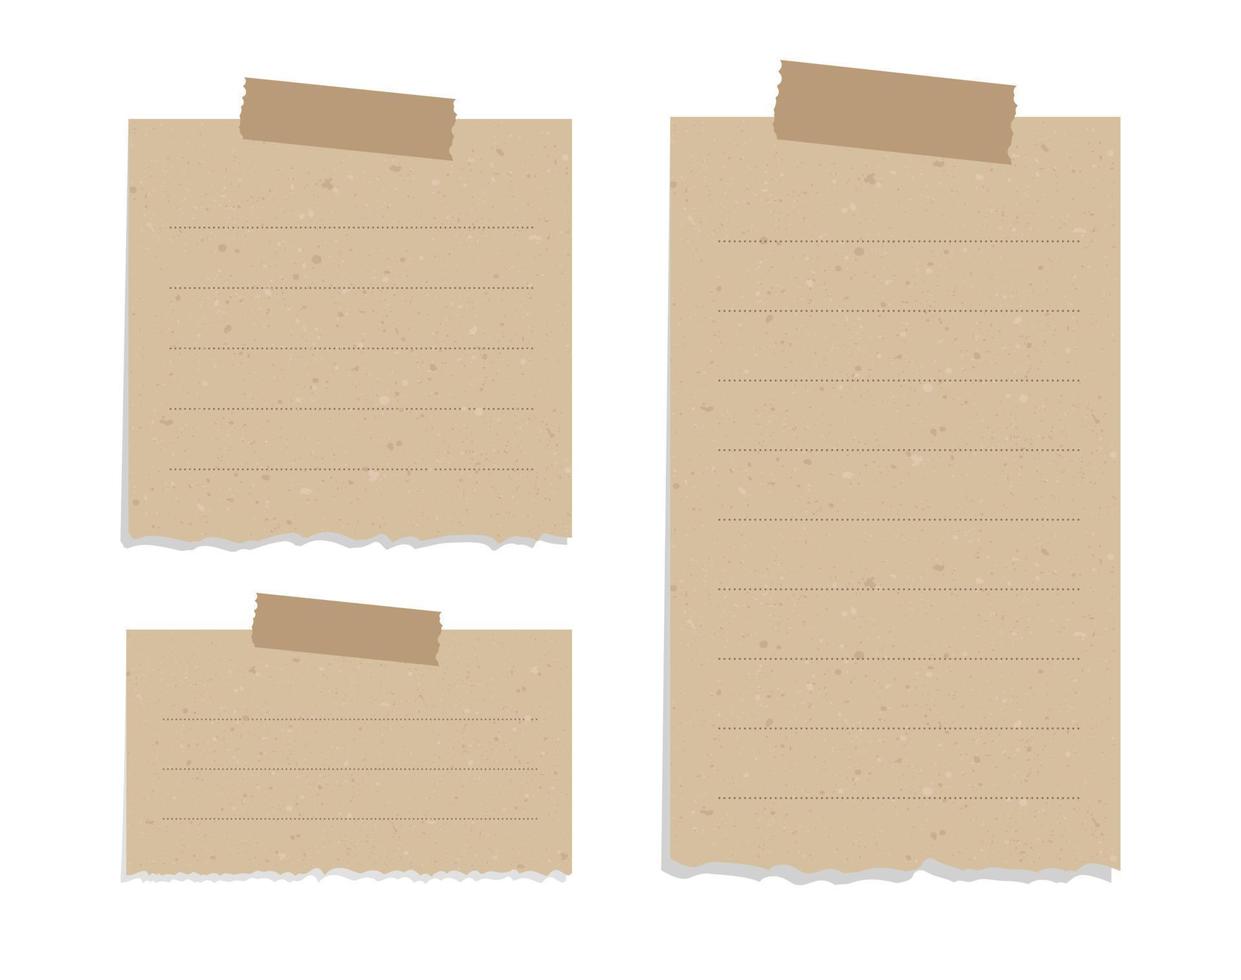 årgång brun trasig papper notera uppsättning. återvunnet PM papper med lim tejp vektor illustration.